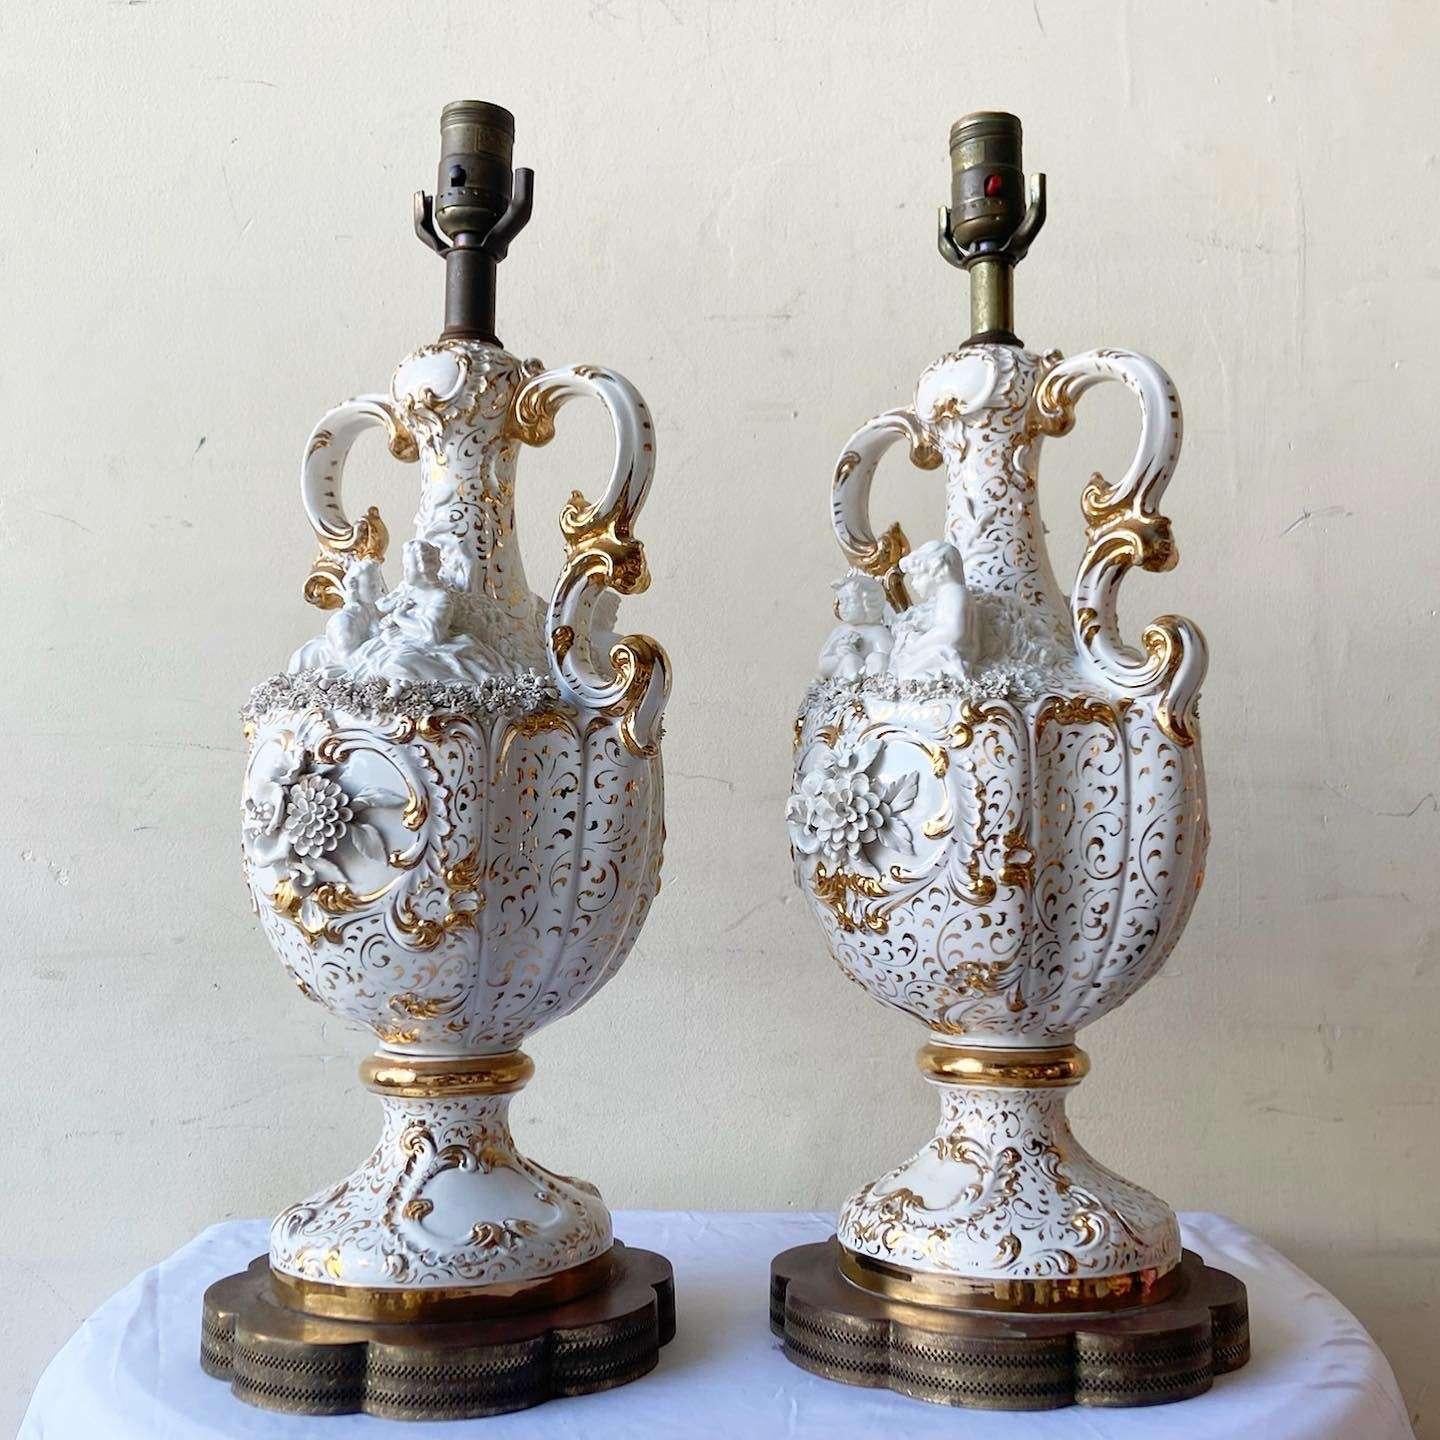 Incroyable paire de lampes de table vintage ornées. Chaque lampe présente un design complexe de fleurs et d'angelots en blanc et or.
